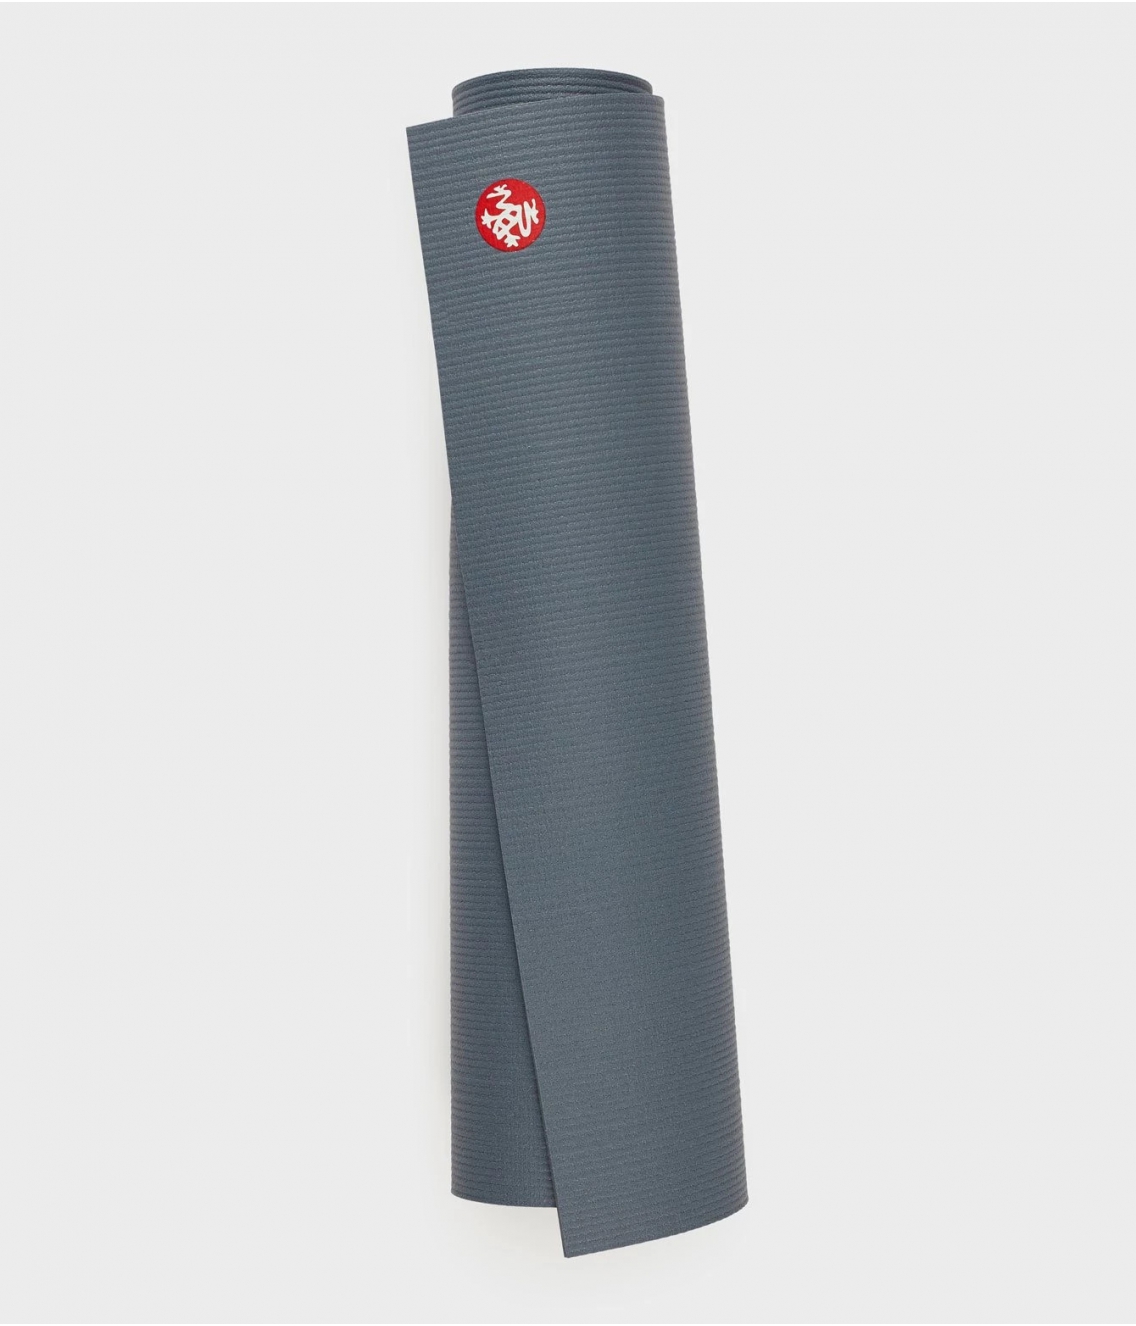 Профессиональный коврик для йоги из ПВХ Manduka PROlite Mat 180*61*0,47 см - Storm (Limited Edition)